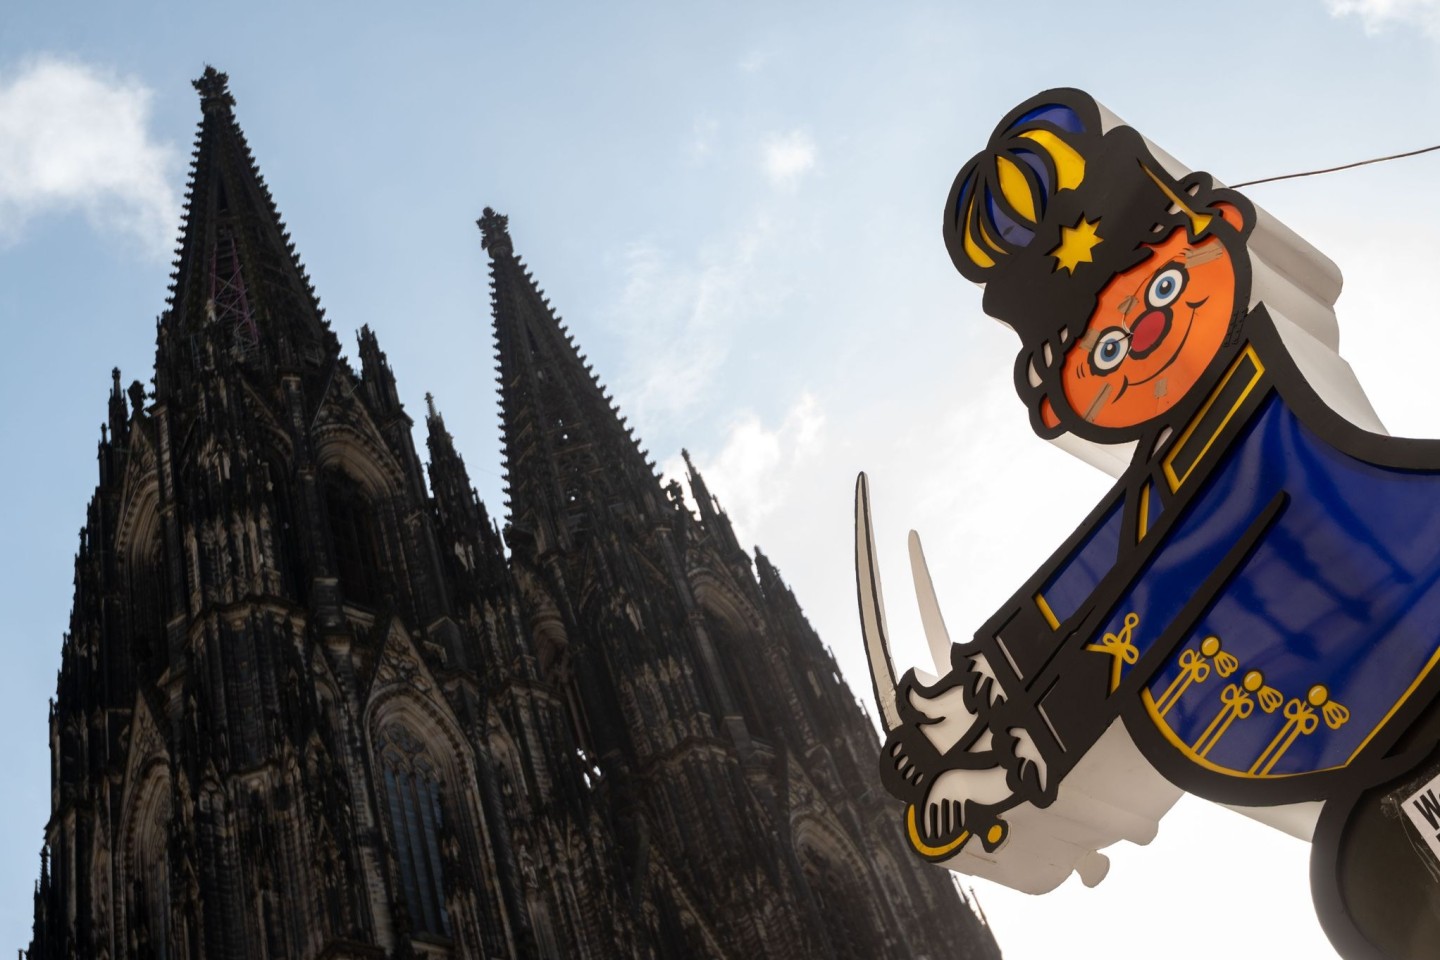 Am Rosenmontag soll es in Köln eine Friedensdemo mit Karnevalswagen geben.